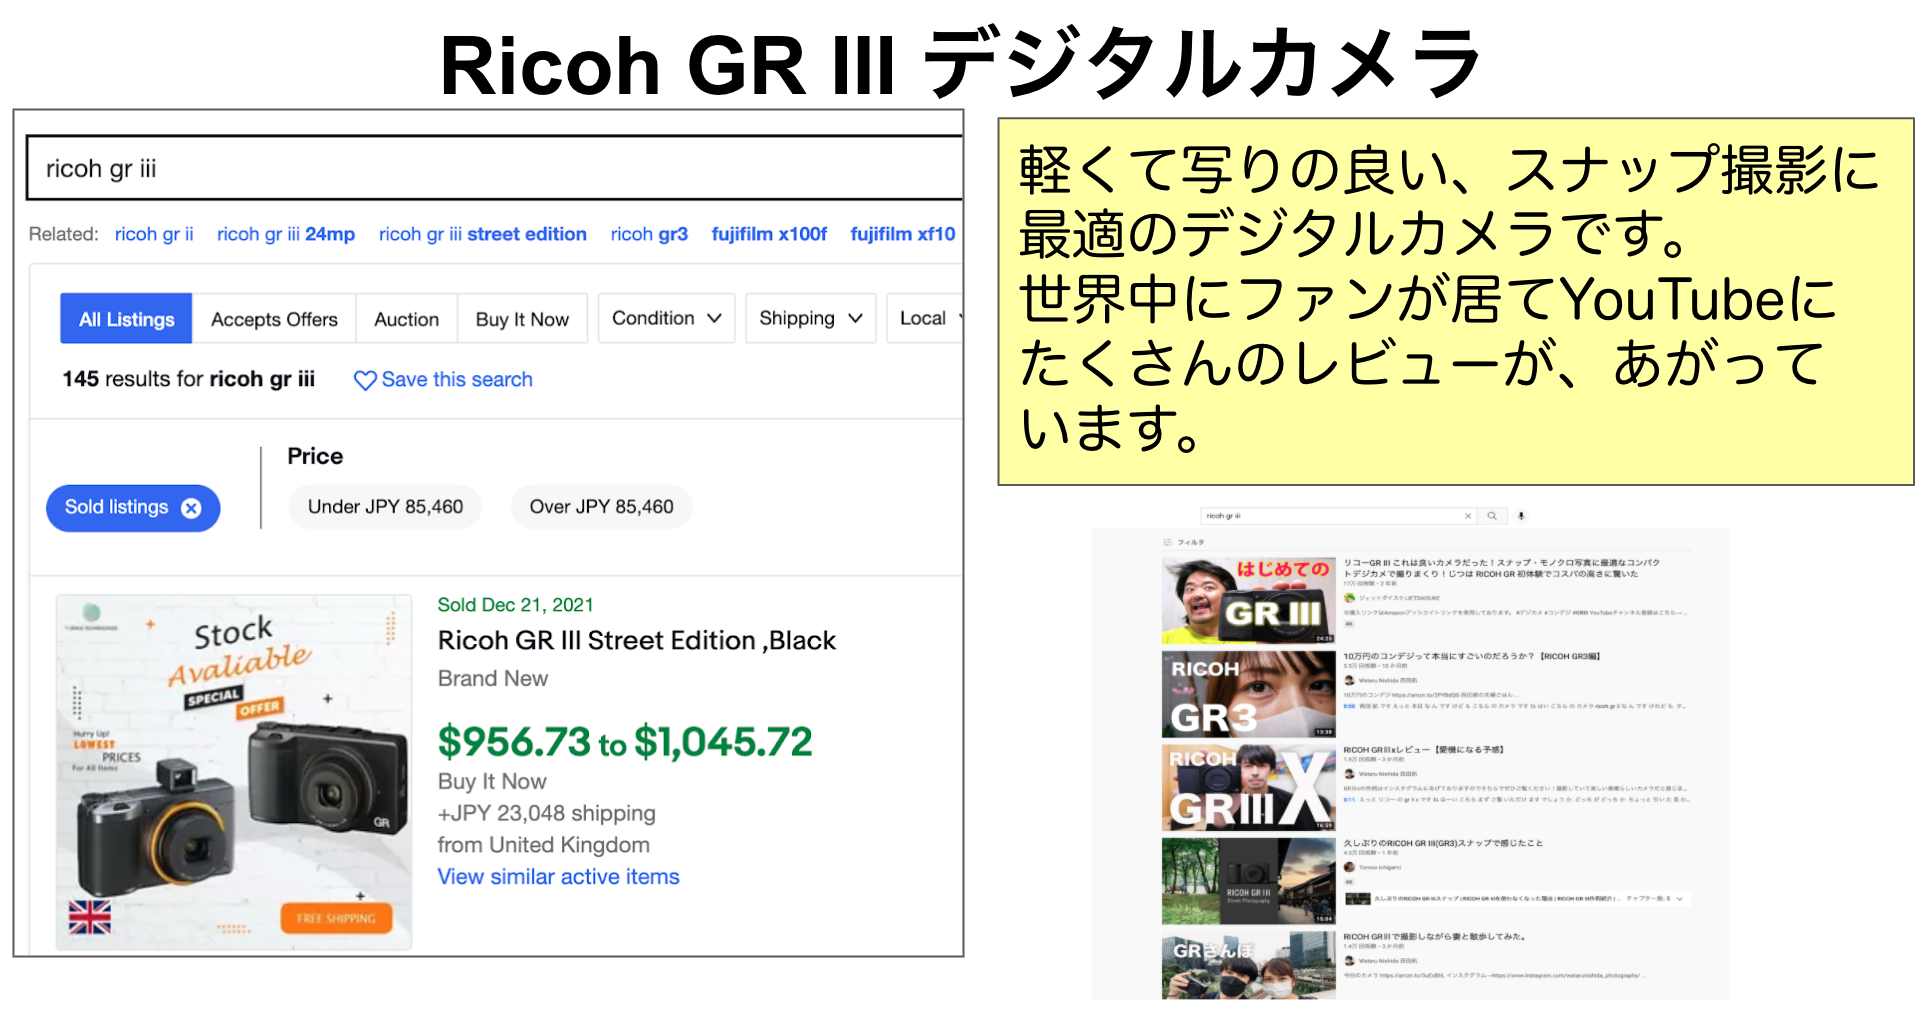 Ricoh GR III デジタル カメラ